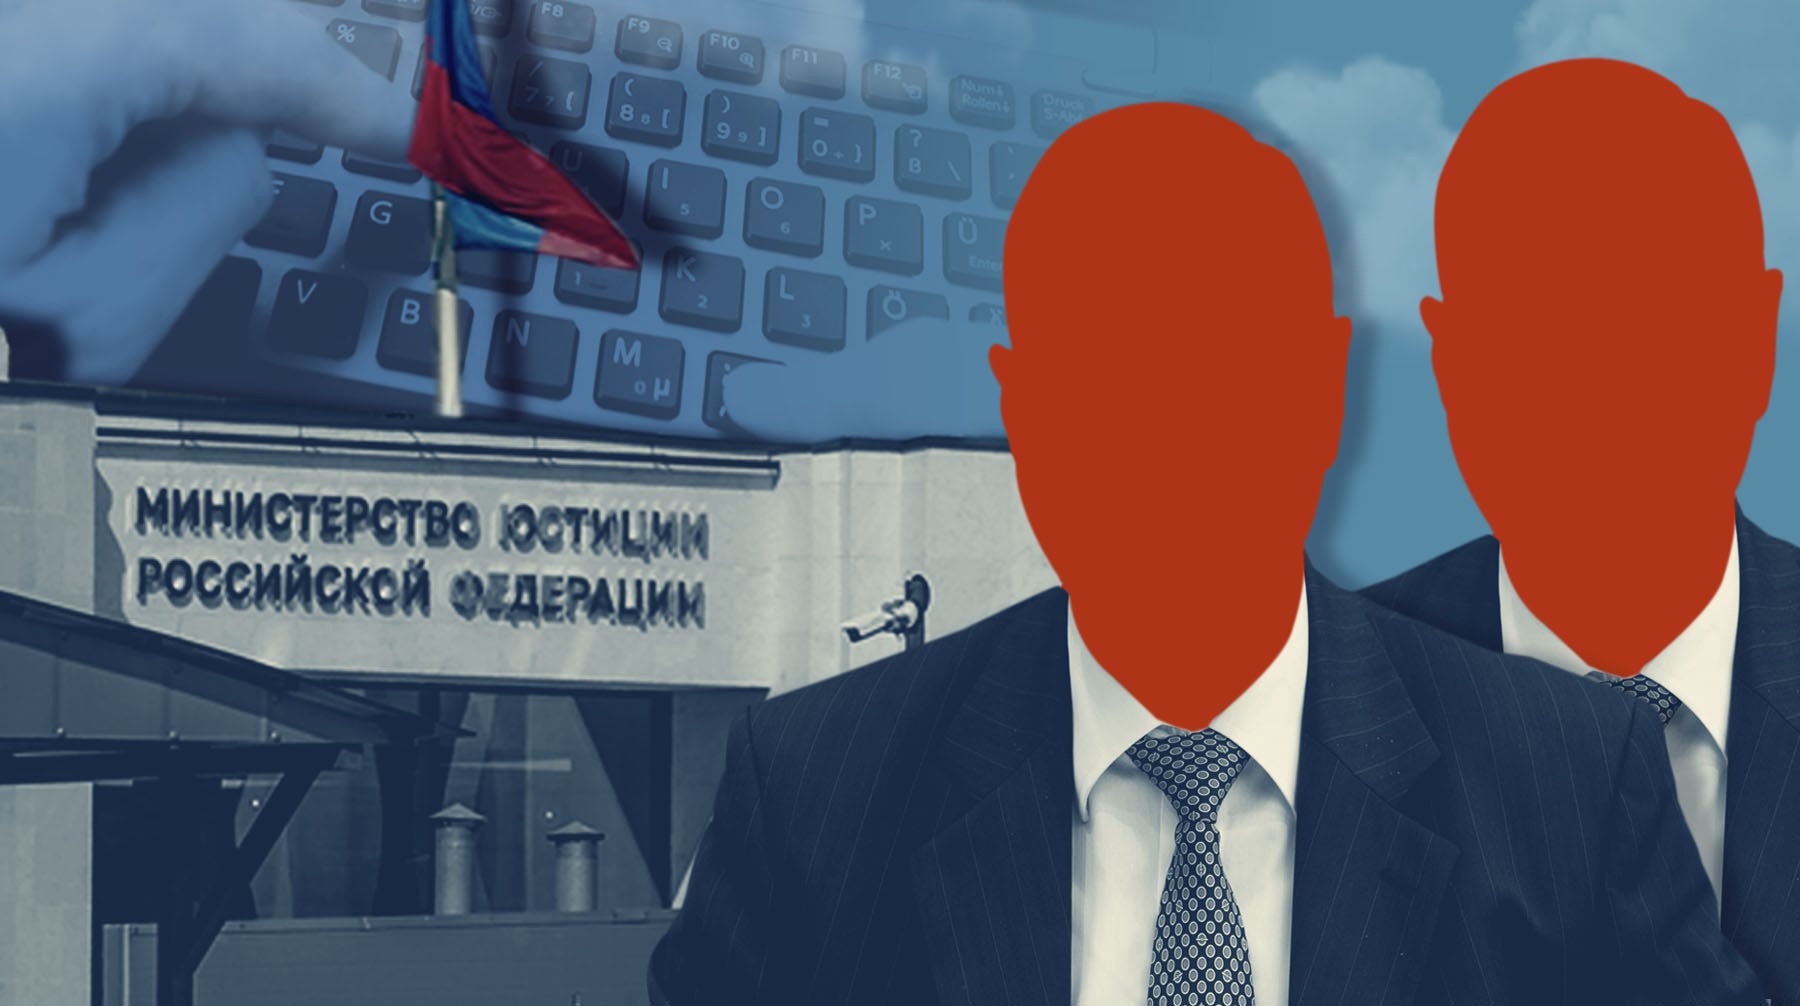 Dailystorm - В Госдуме неоднозначно восприняли новость о публикации персональных данных иноагентов